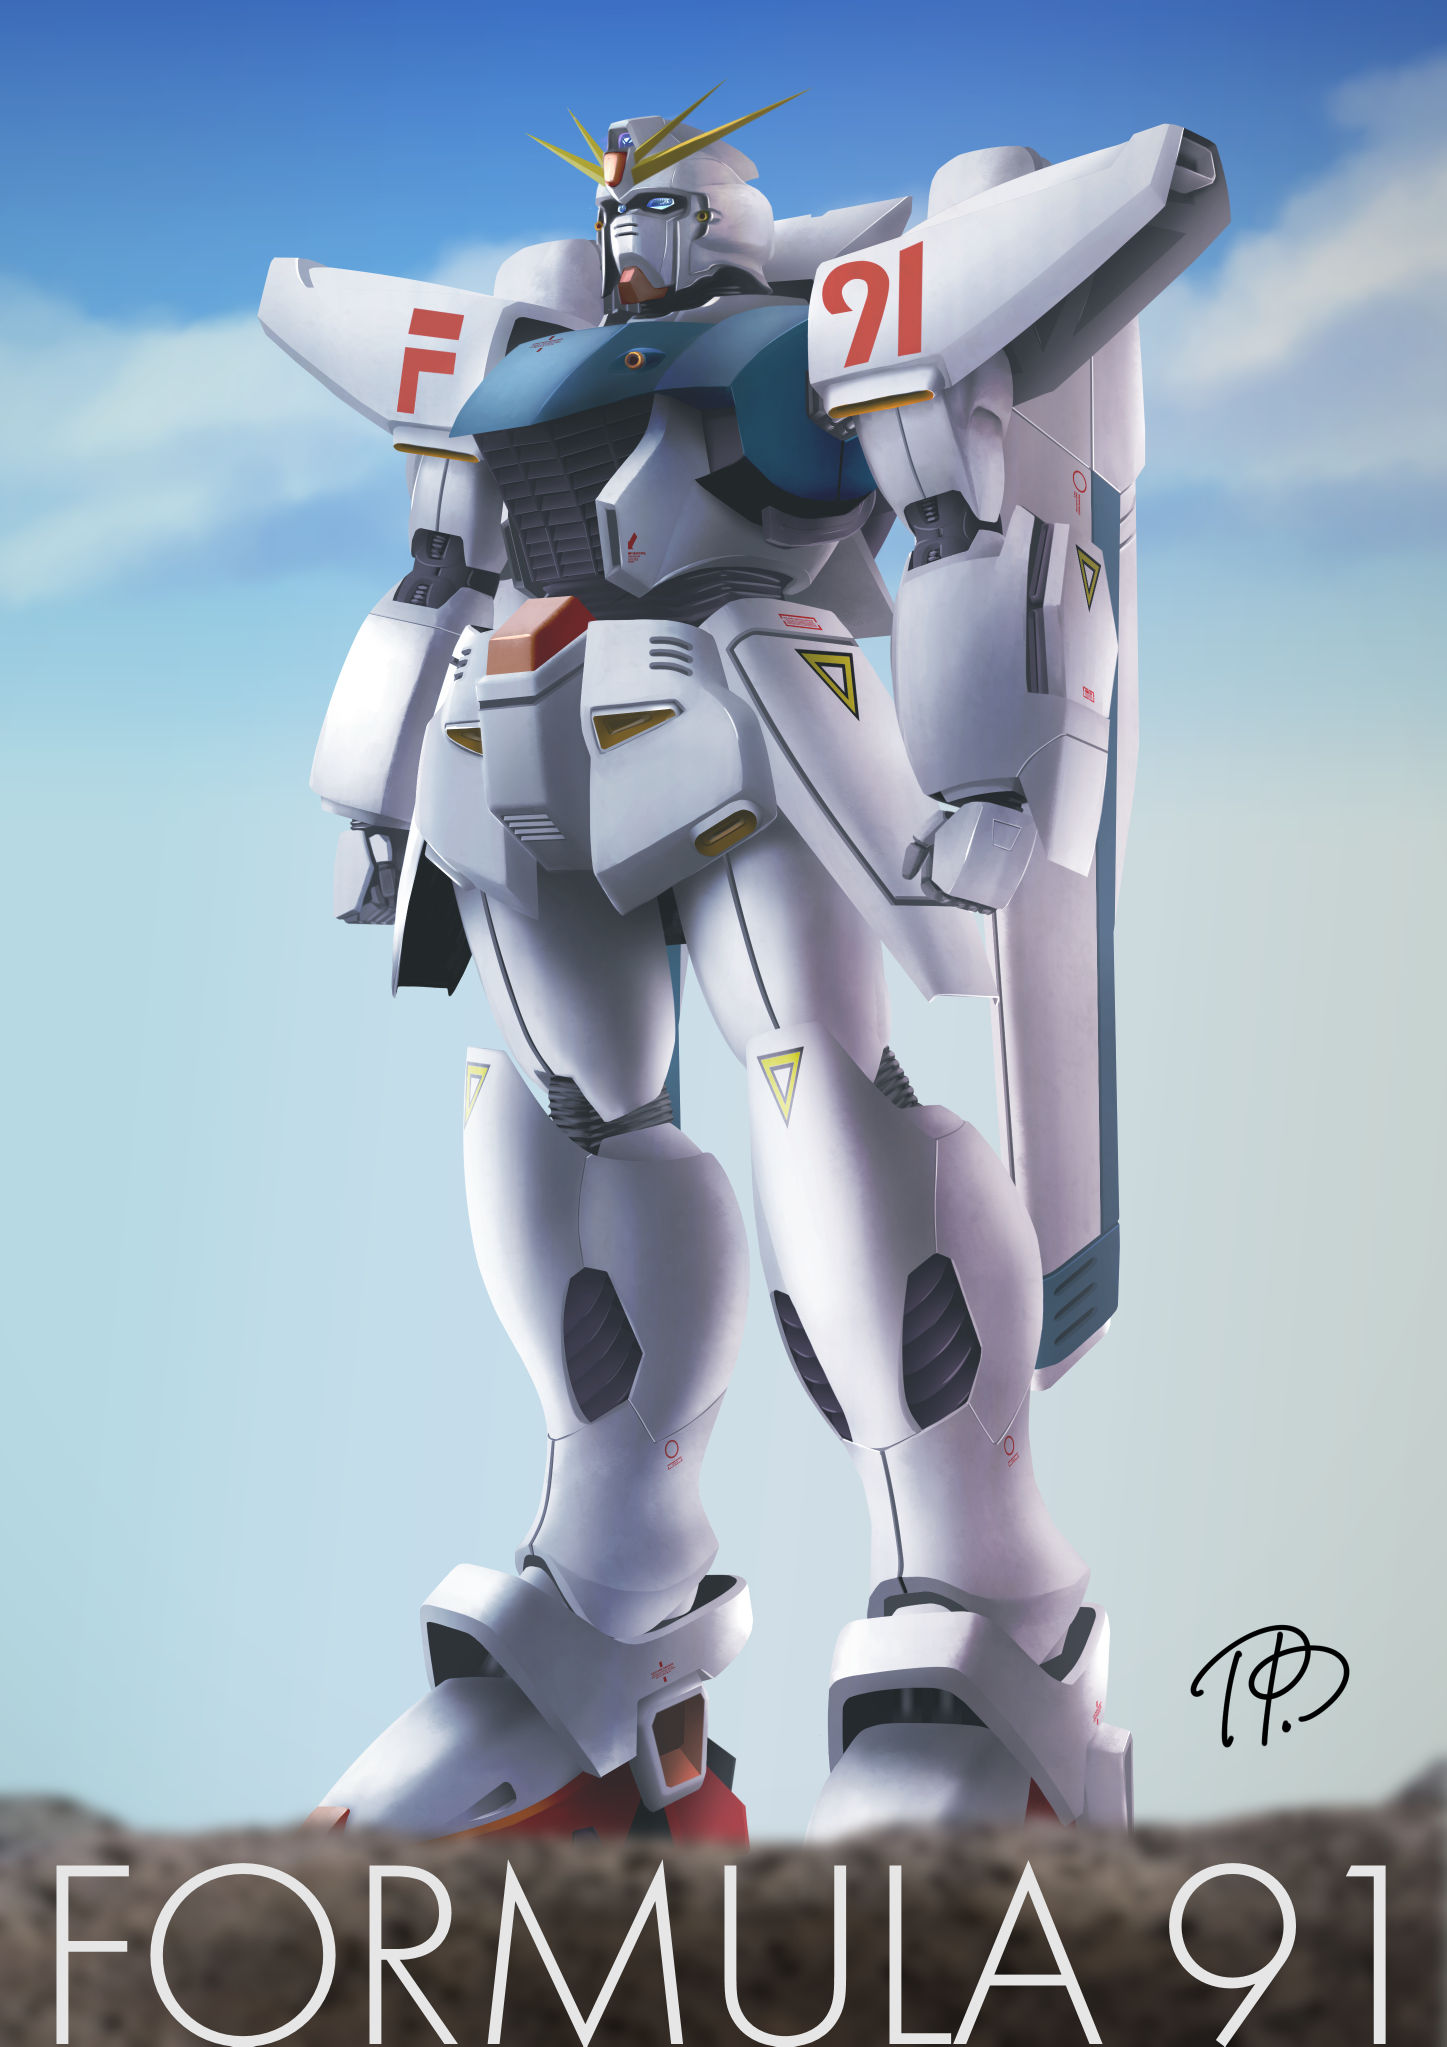 Anime 1447x2047 anime mechs Super Robot Taisen Mobile Suit Gundam F91 Gundam F91 Gundam artwork digital art fan art